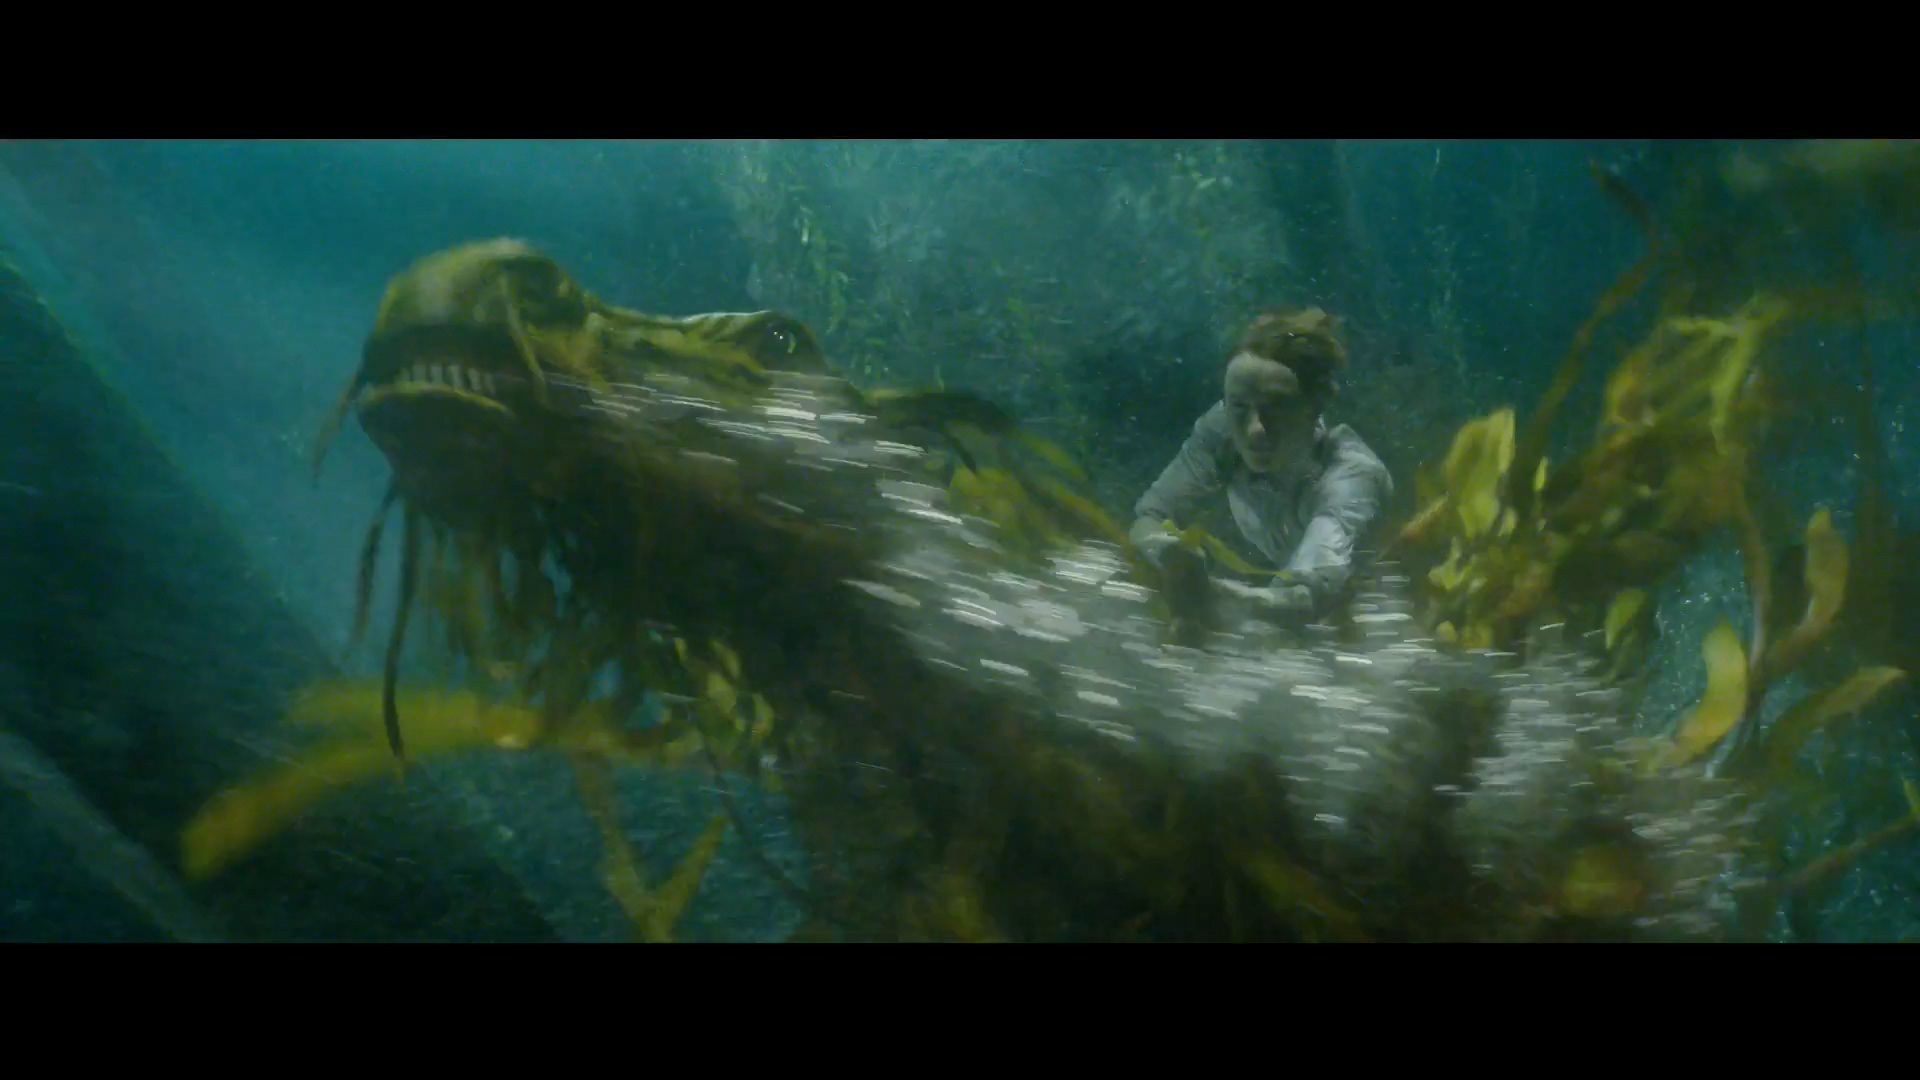 《神奇动物2》终极版中文预告 山海经神兽惊艳全场